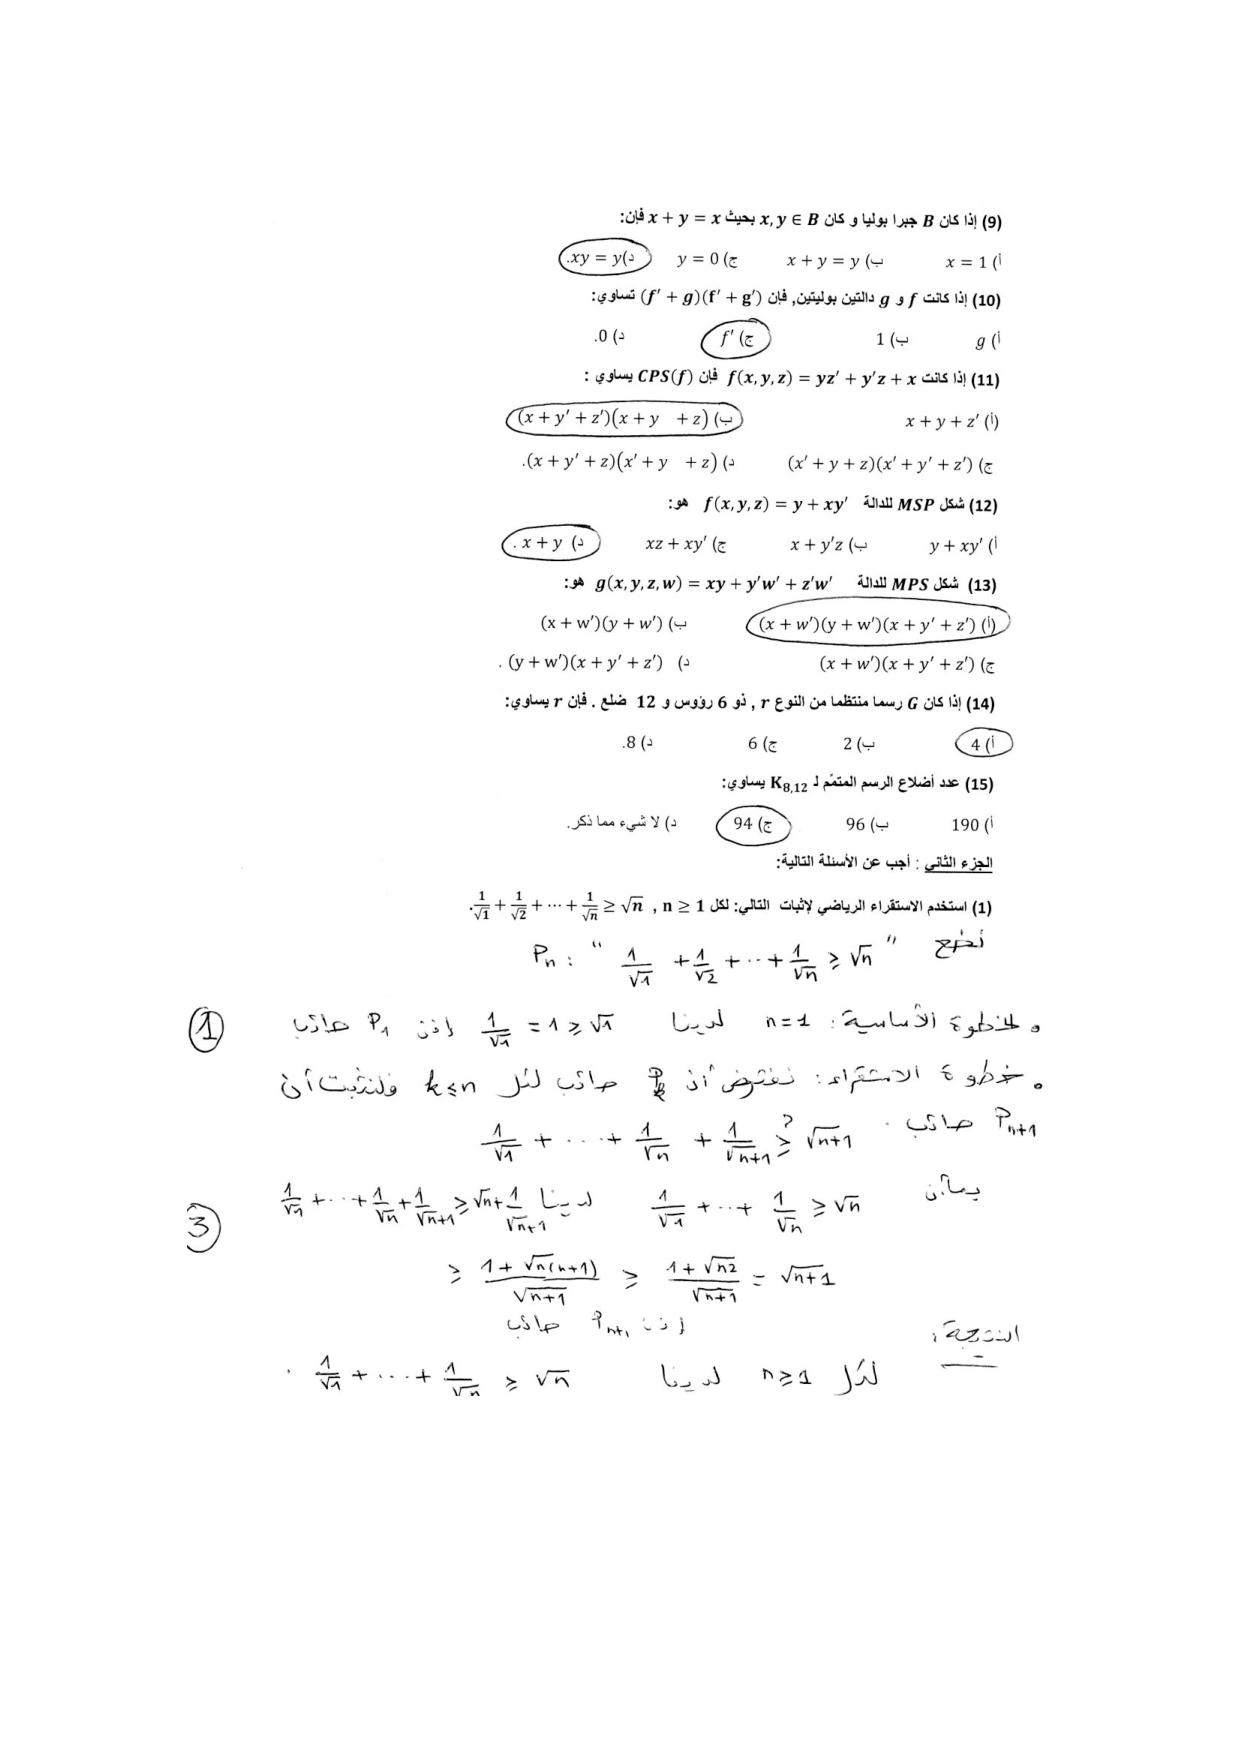 اسئلة اختبار ريض 151 الرياضيات المتقطعة الفصل الثاني 1430هـ